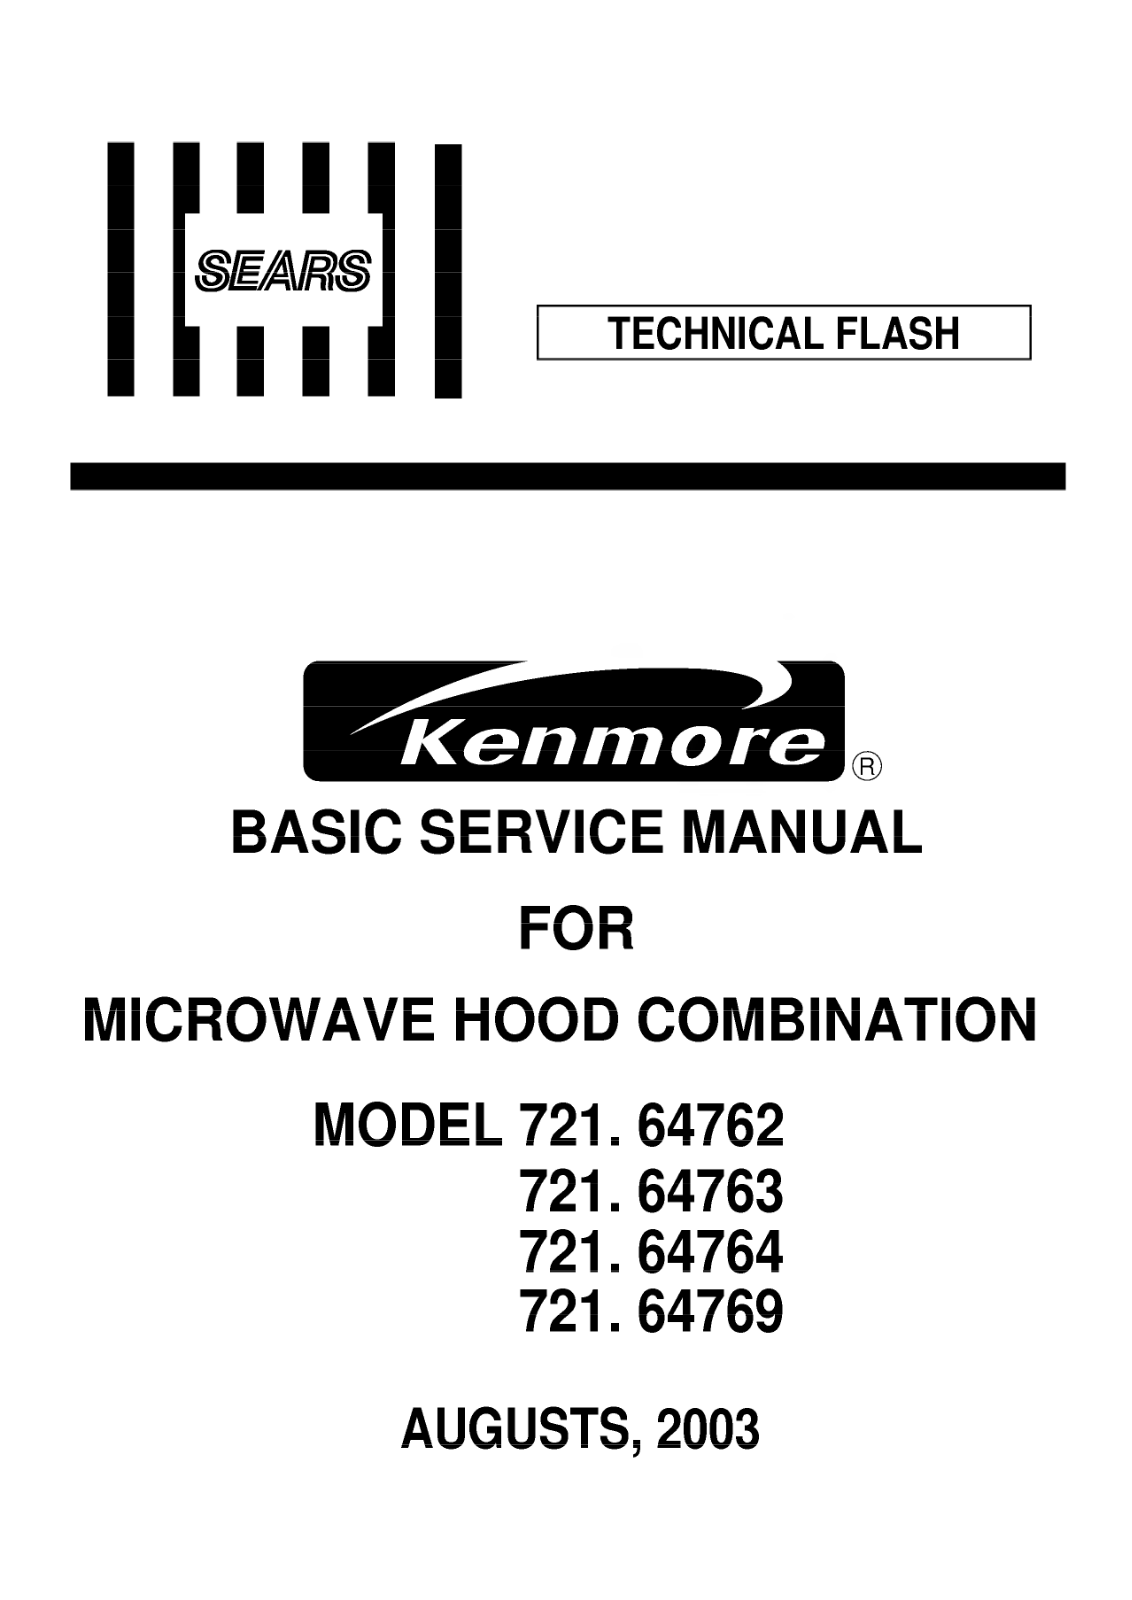 Kenmore 721.64769, 721.64763, 721.64764 Service Manual